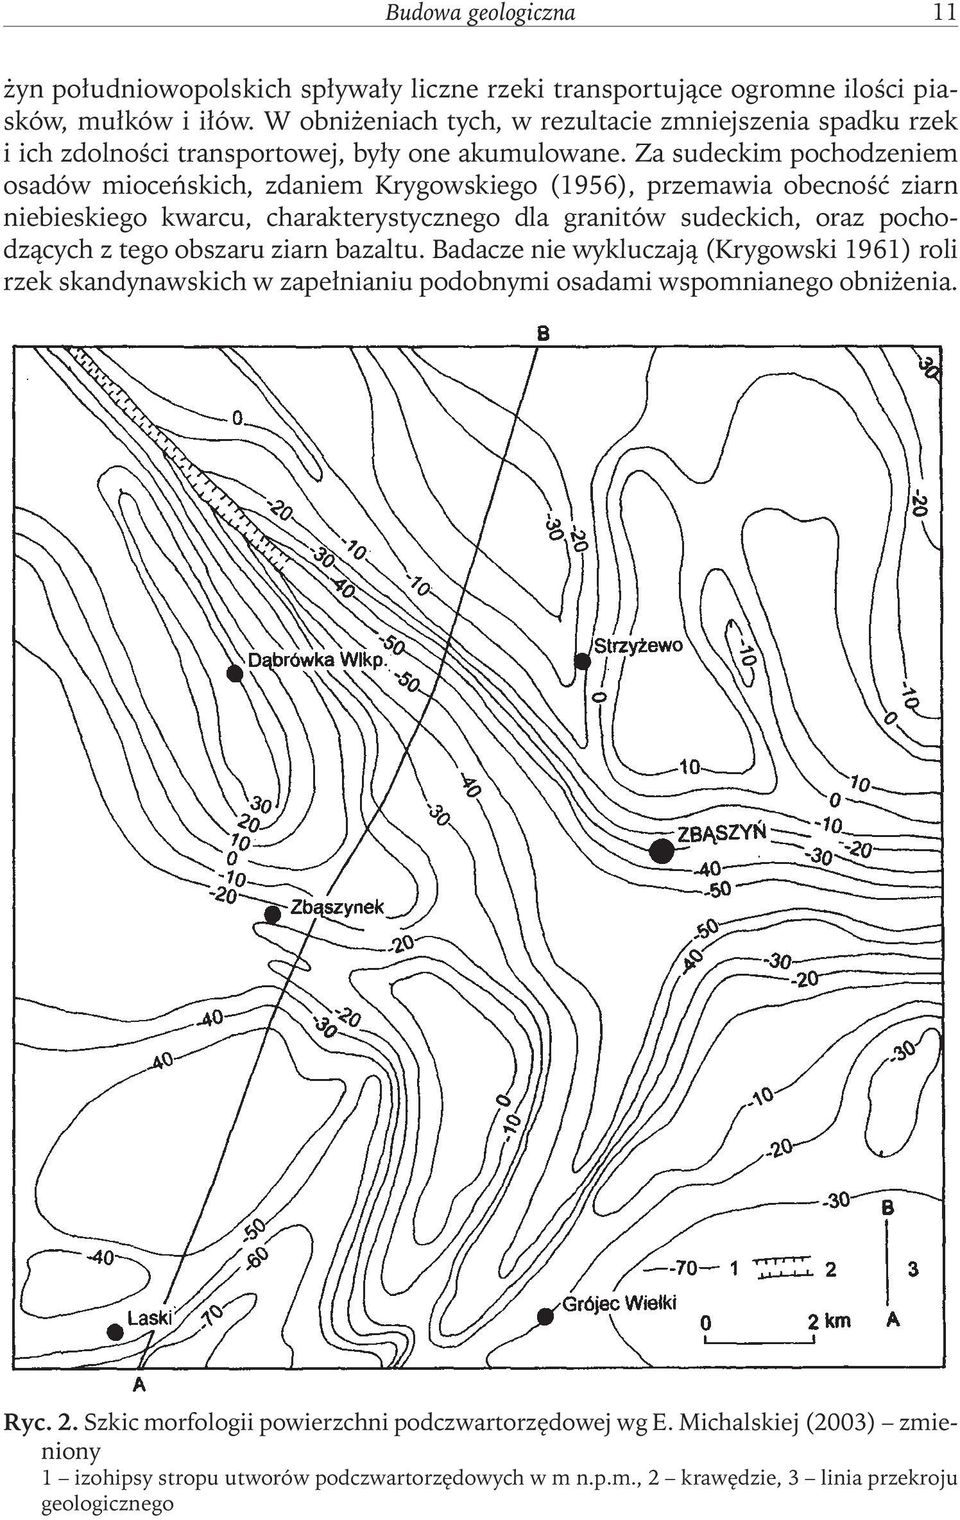 Za sudeckim pochodzeniem osadów mioceńskich, zdaniem Krygowskiego (1956), przemawia obecność ziarn niebieskiego kwarcu, charakterystycznego dla granitów sudeckich, oraz pochodzących z tego